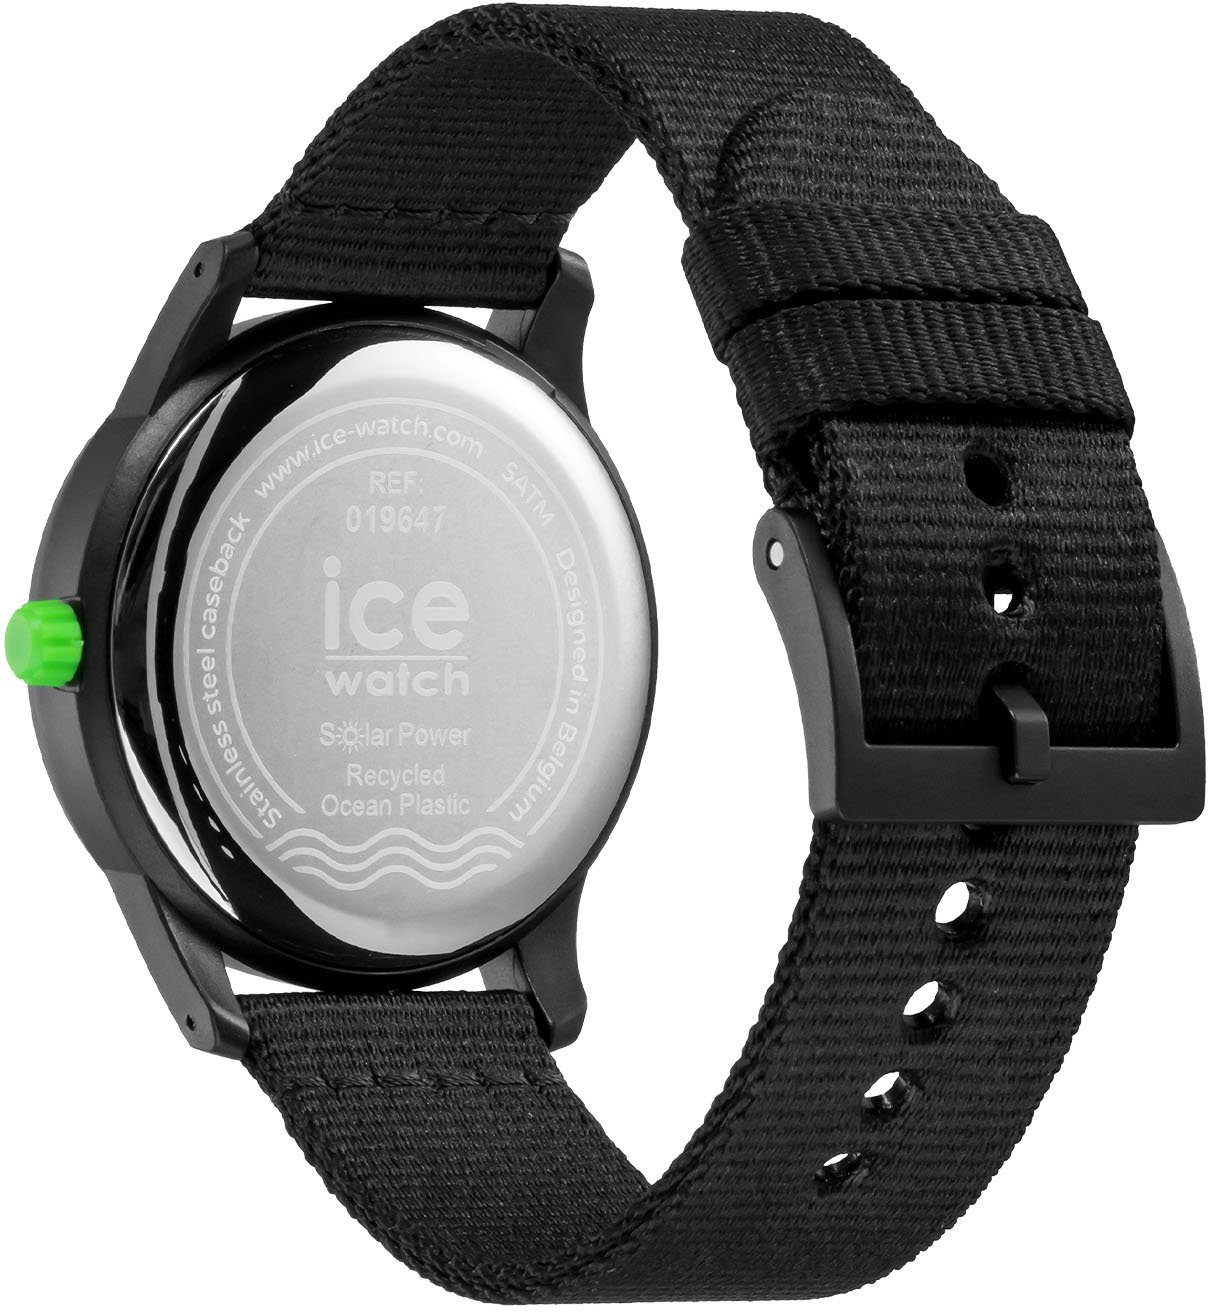 ICE ice-watch - schwarz 019647 Solaruhr ocean SOLAR,